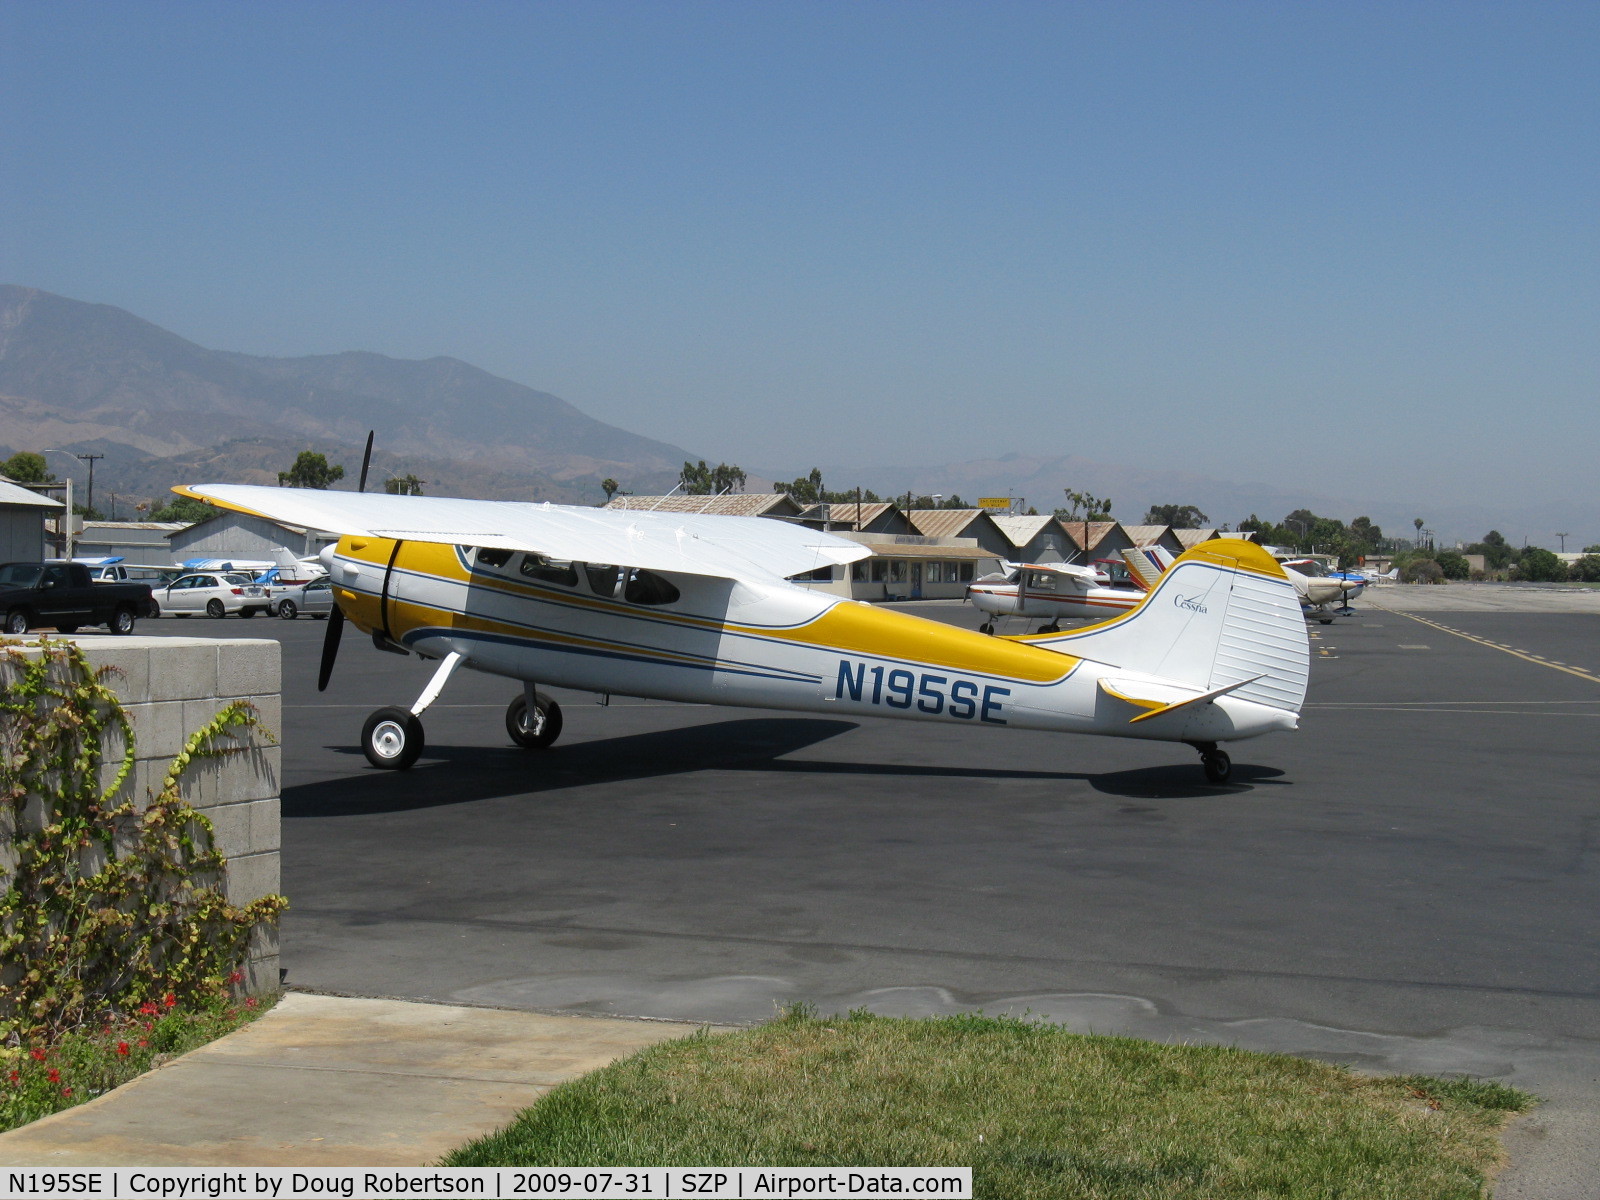 N195SE, 1951 Cessna 195 (U-20A) C/N 7857, Cessna 195 BUSINESSLINER, Jacobs R-755 300 Hp, refueling